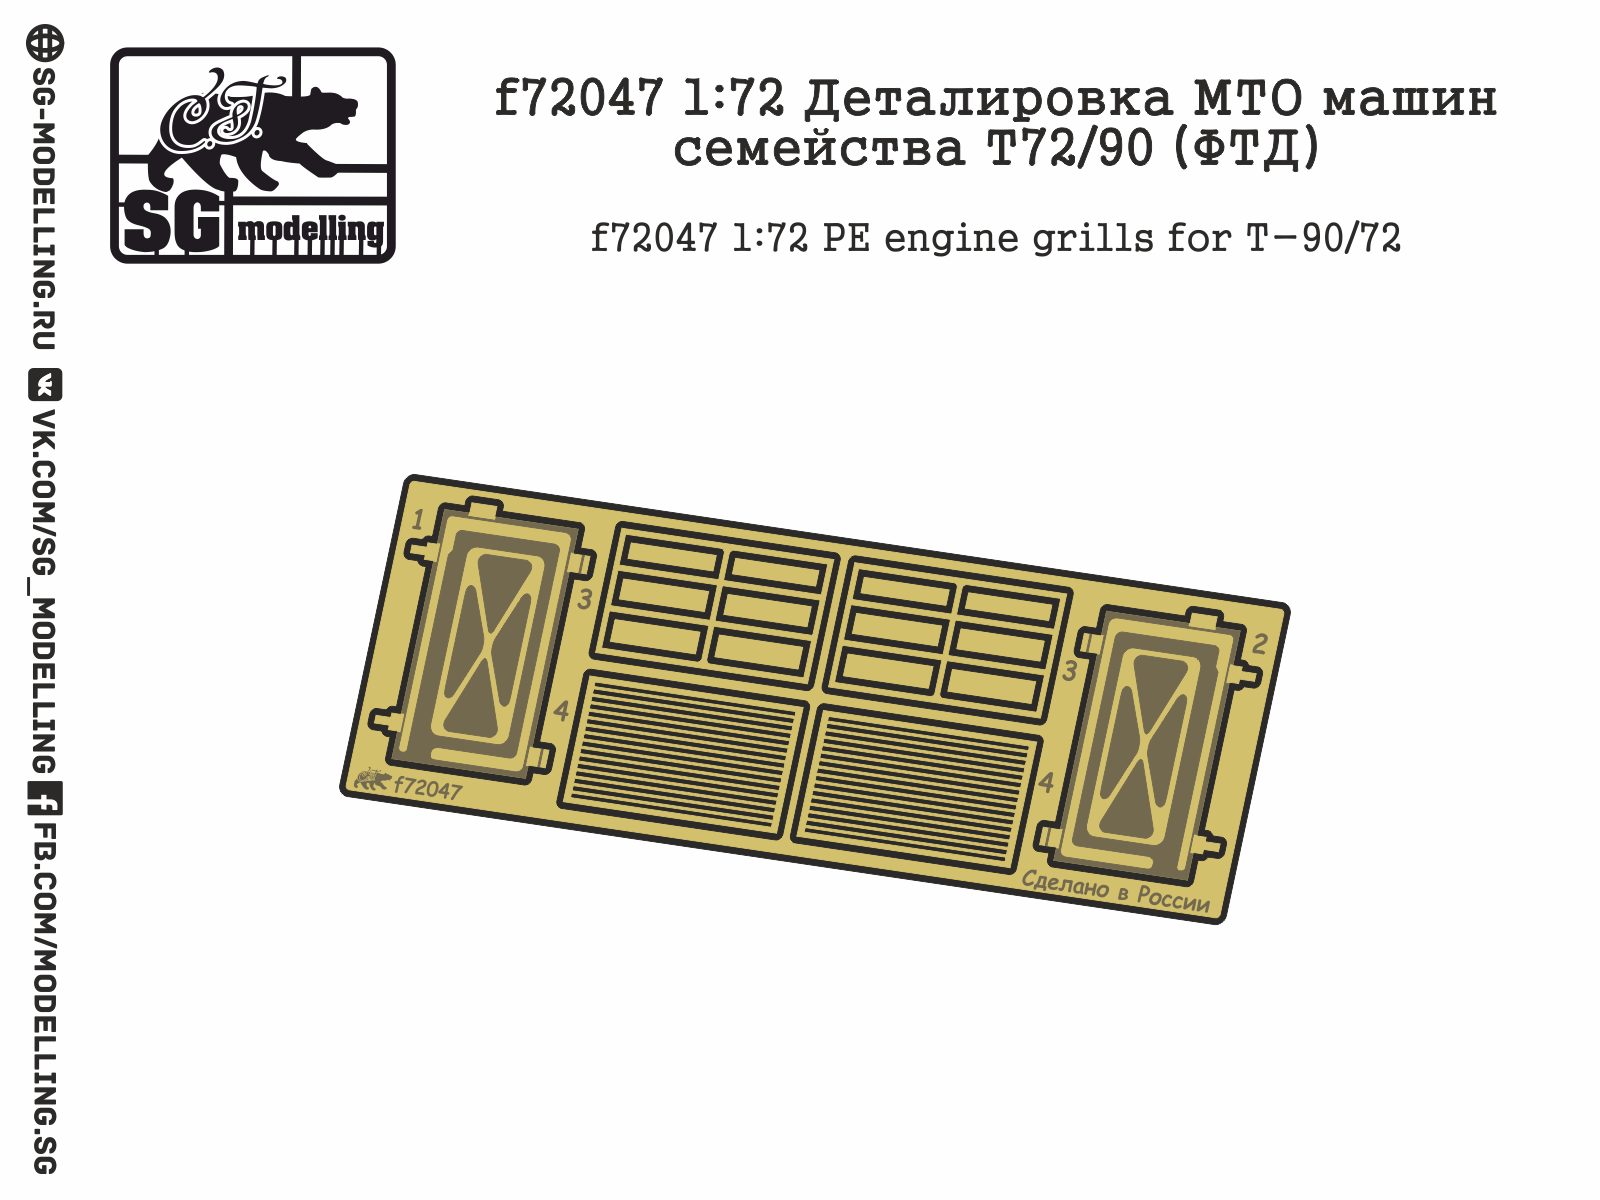 T-90/72 engine grills & decks (ZVE)